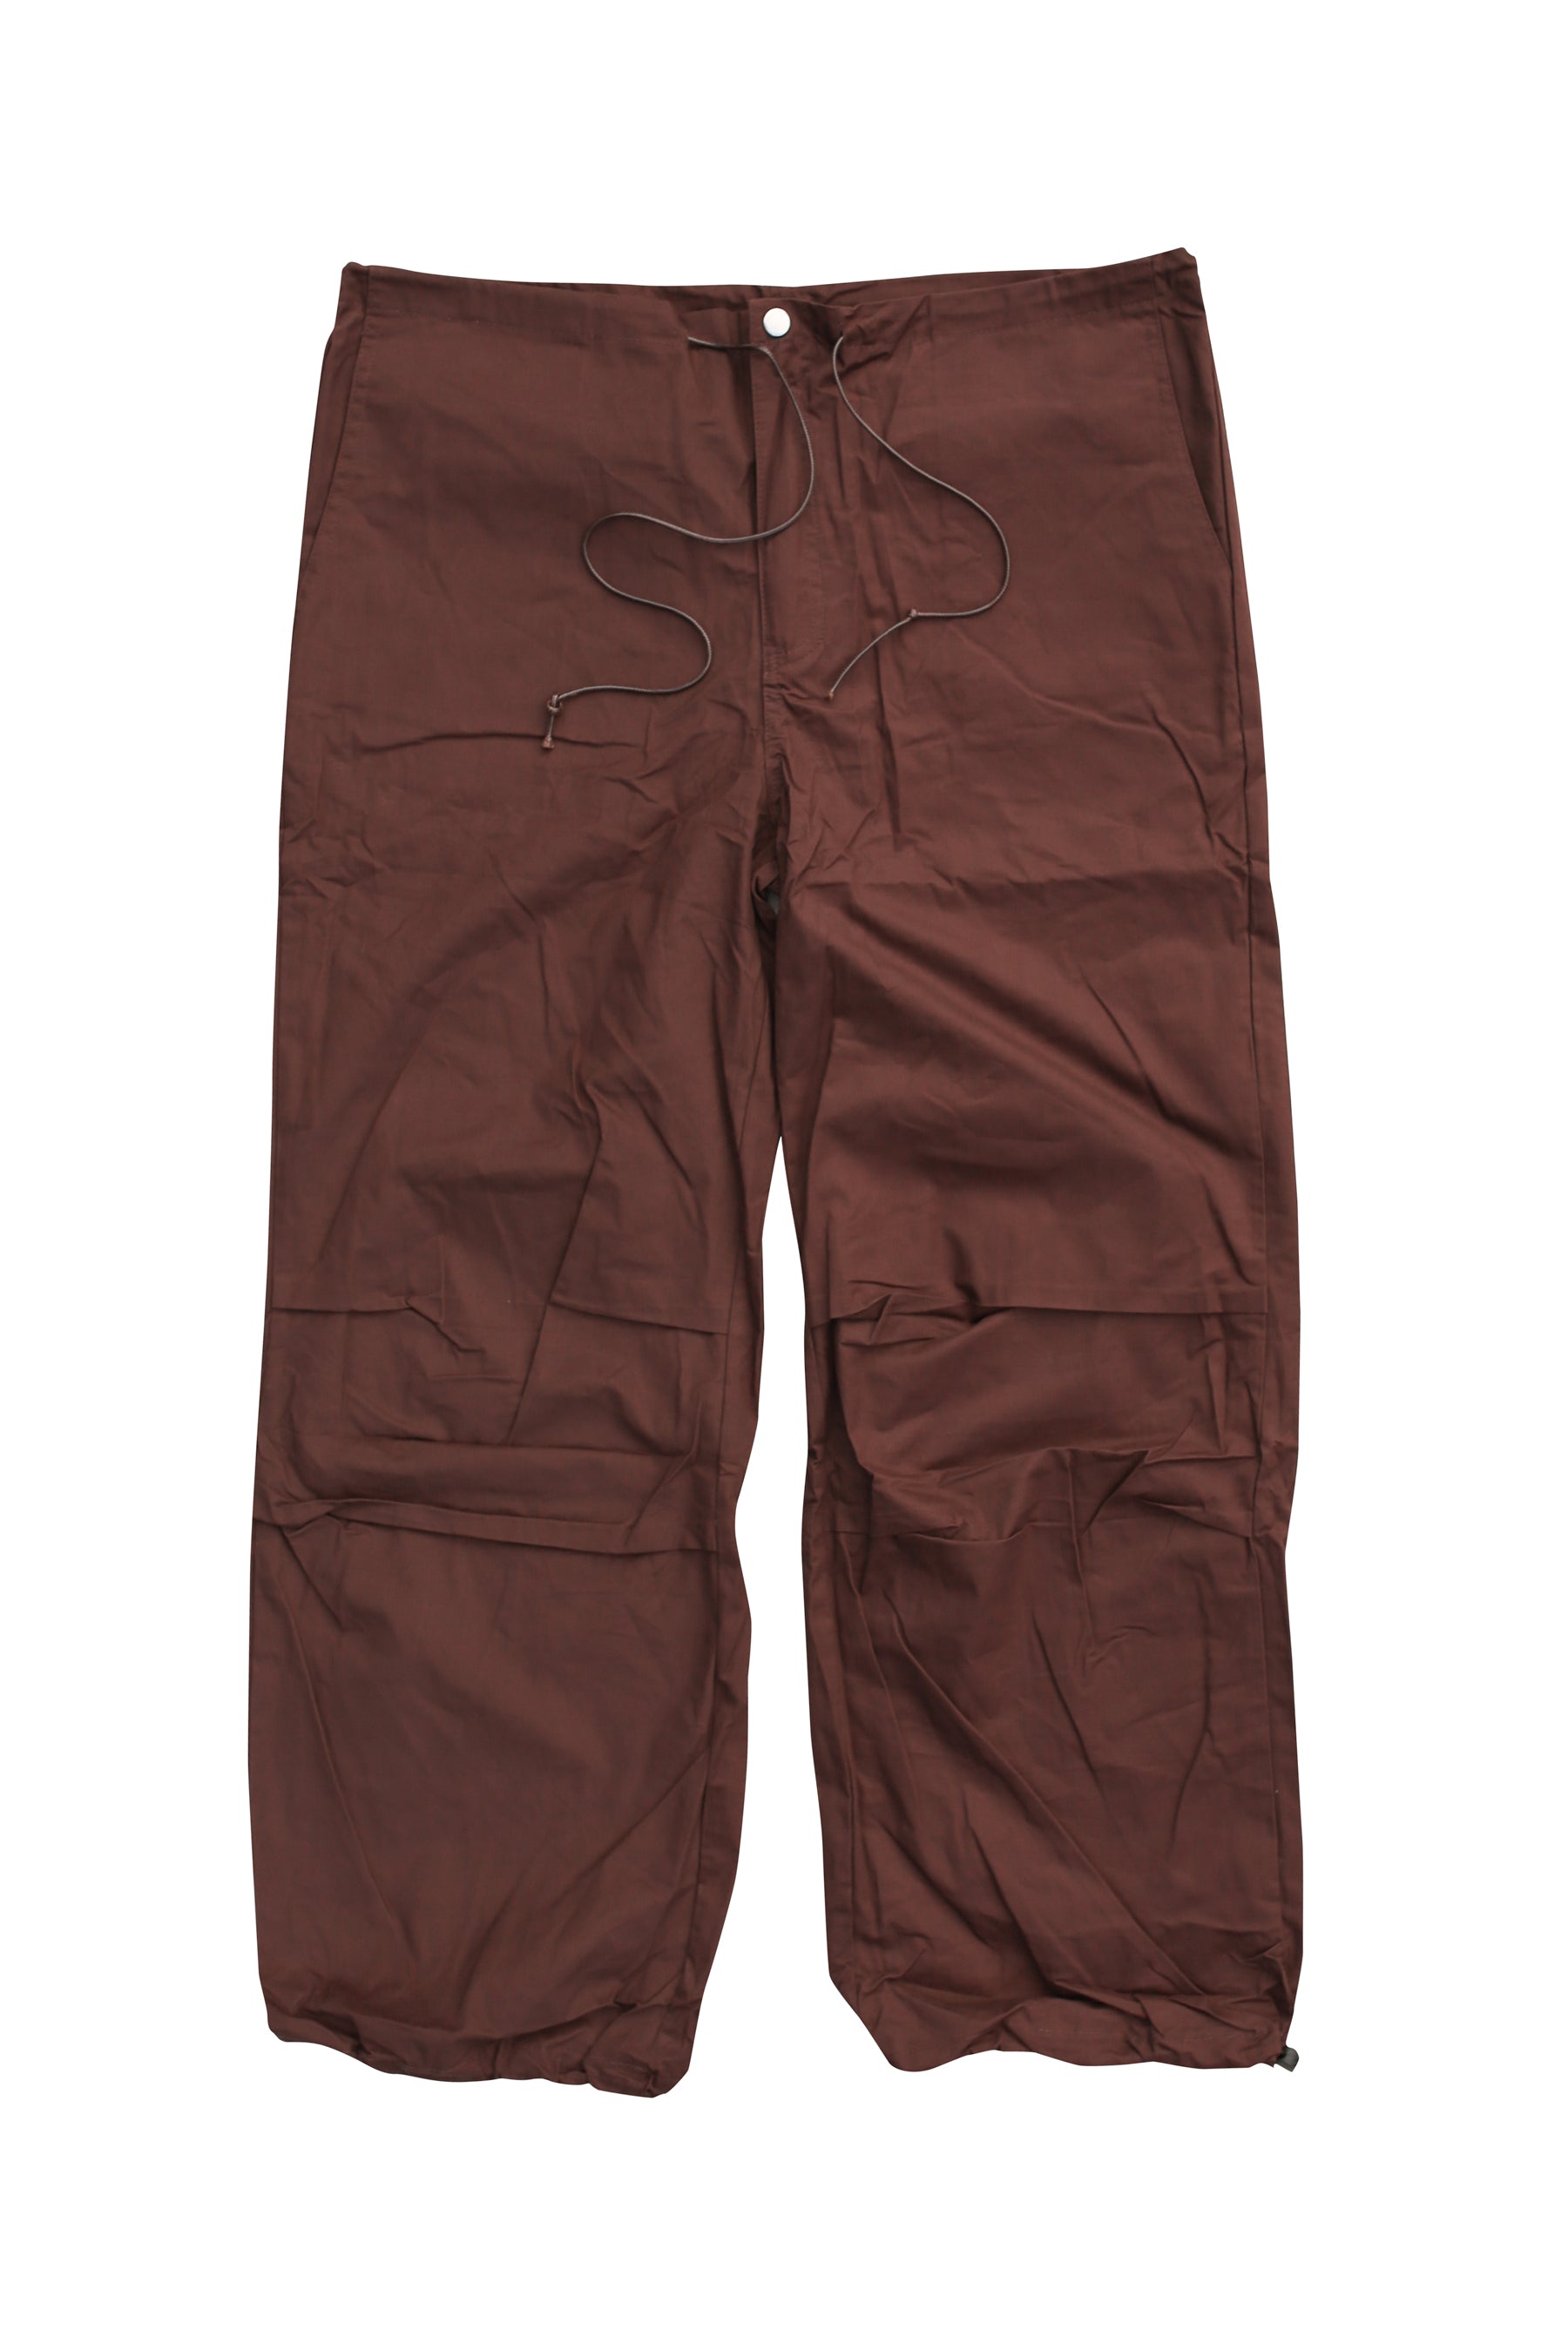 Brown NOVUS Parachute Pants